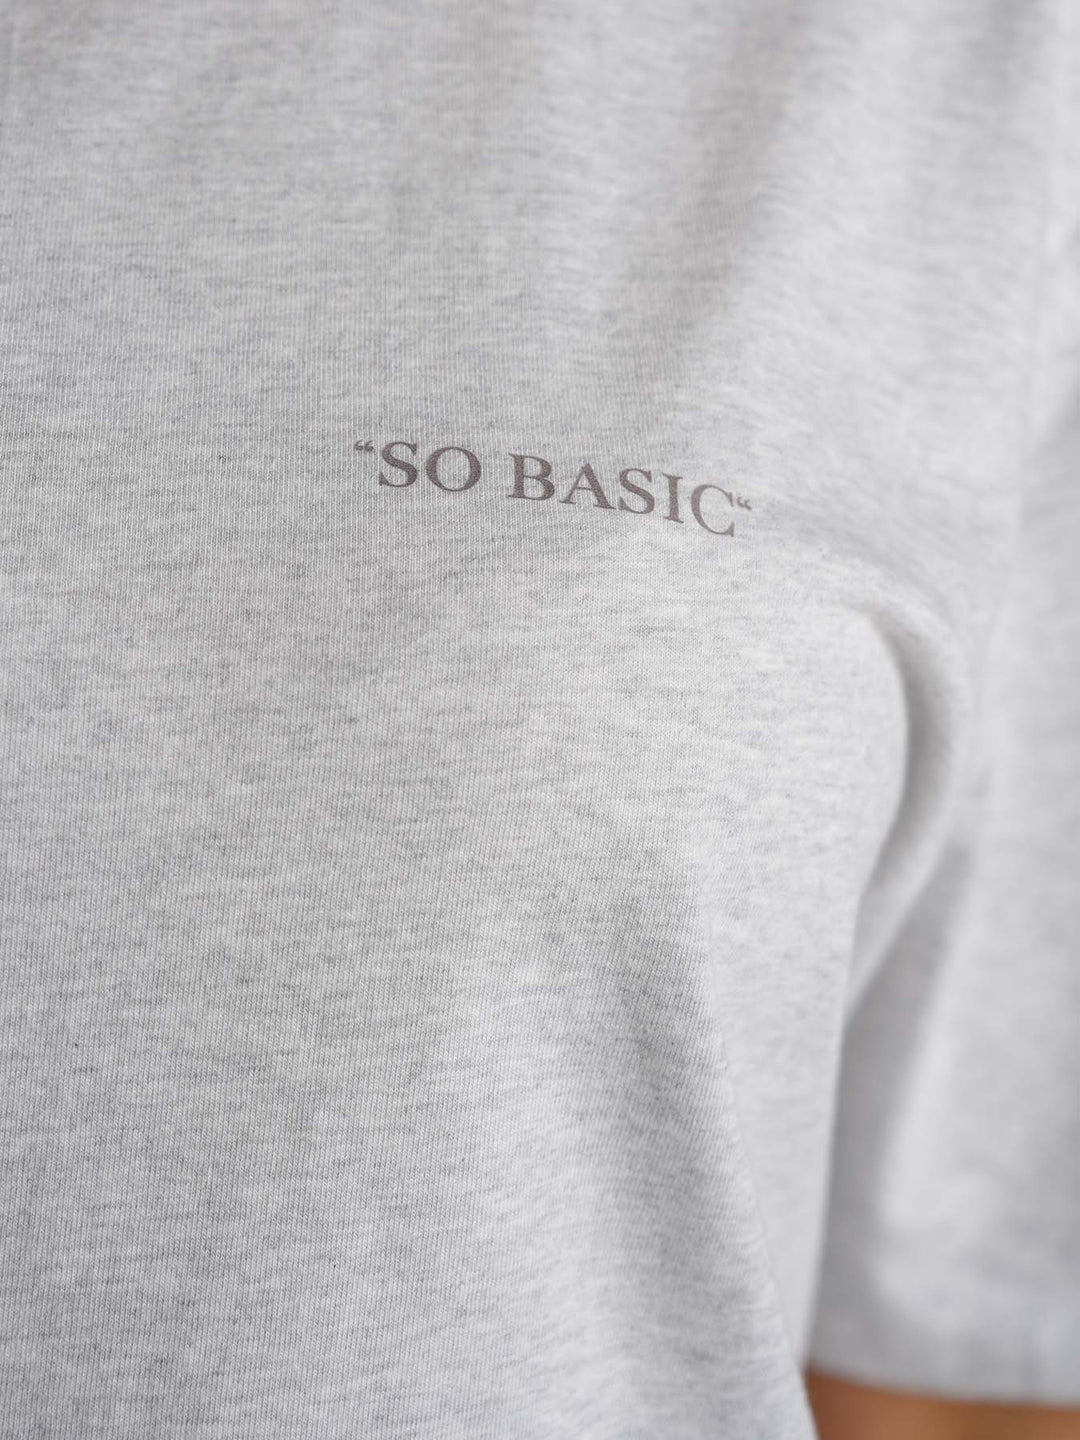 SO BASIC - T-Shirt • Grey Melange